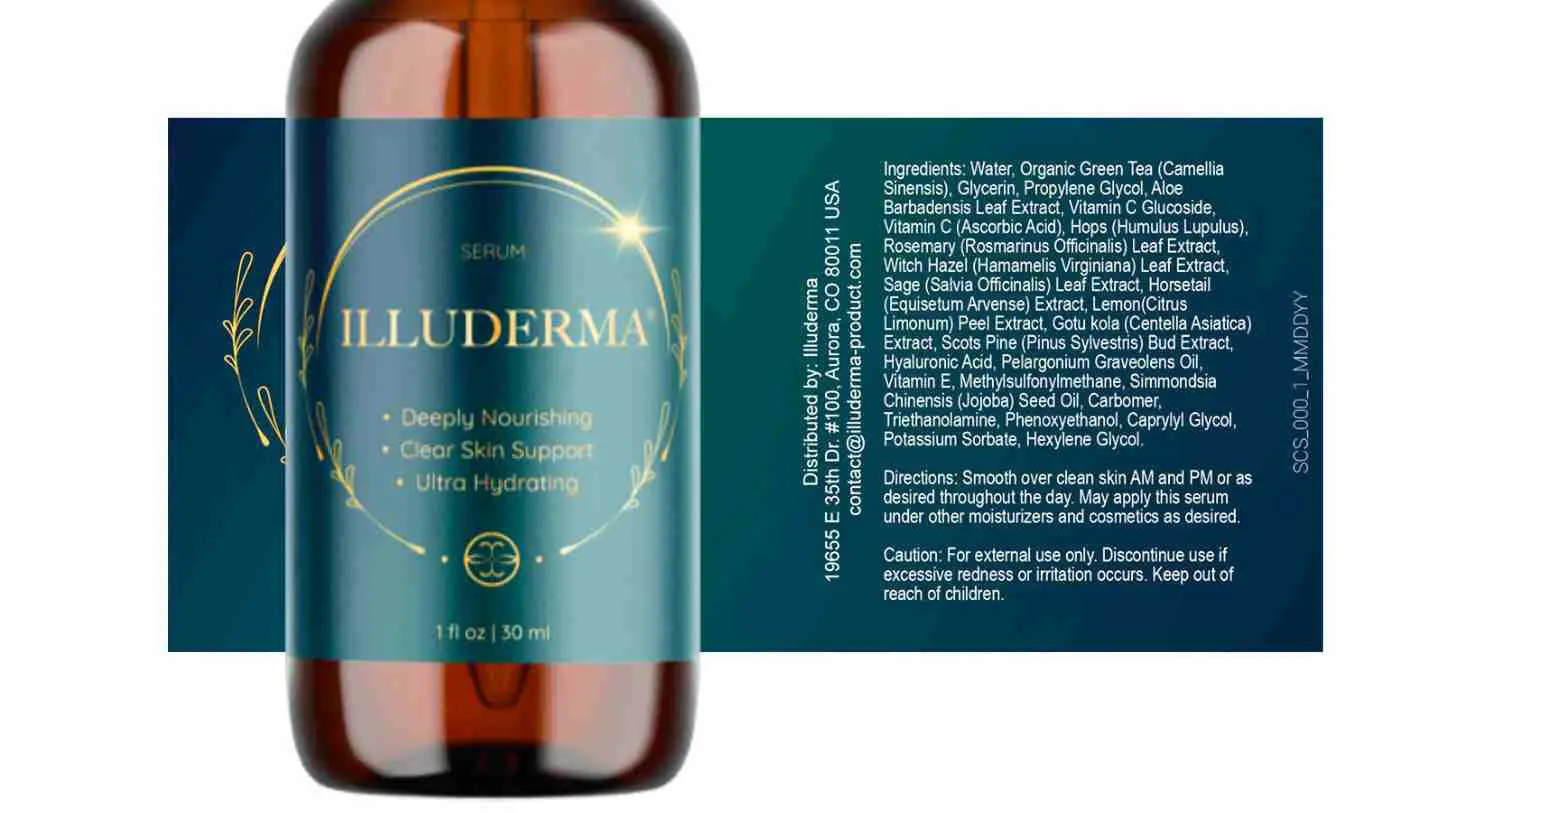 illuderma serum supplement label